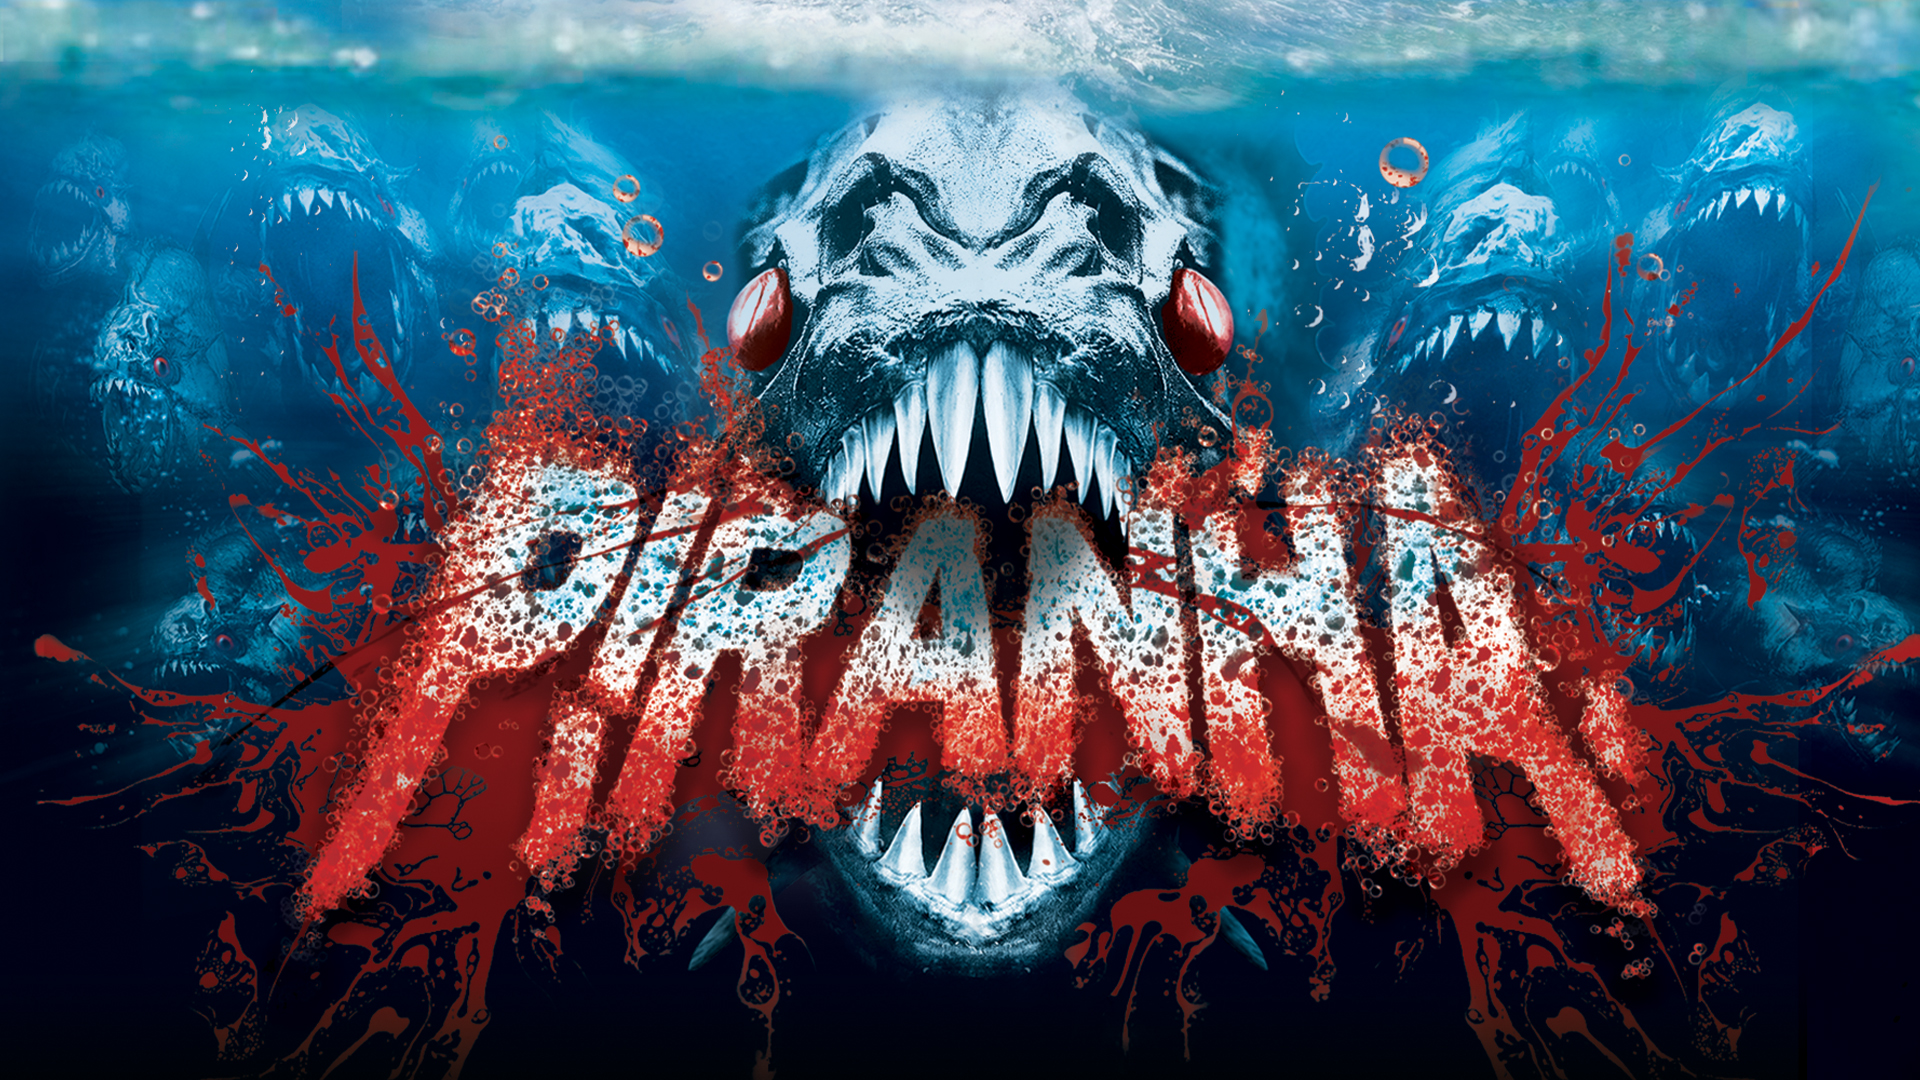 Piranha 3d